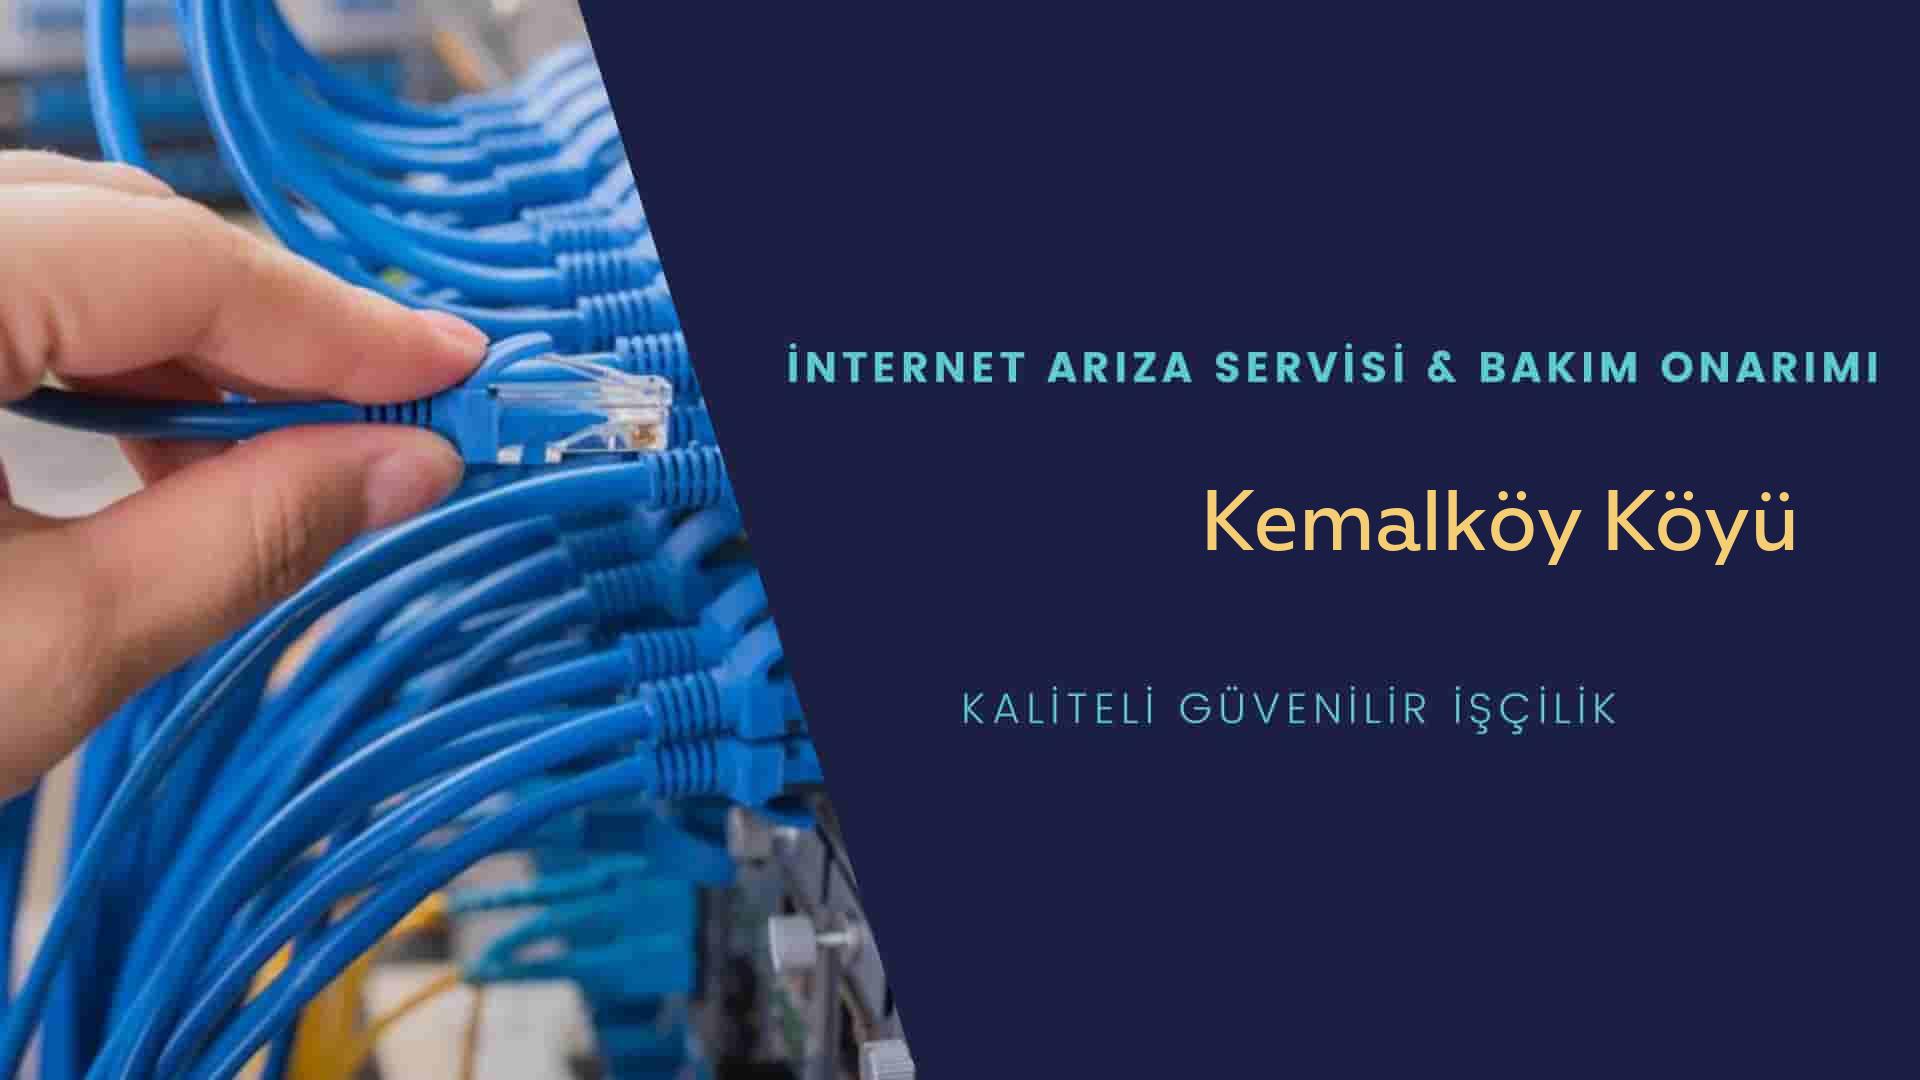 Kemalköy Köyü internet kablosu çekimi yapan yerler veya elektrikçiler mi? arıyorsunuz doğru yerdesiniz o zaman sizlere 7/24 yardımcı olacak profesyonel ustalarımız bir telefon kadar yakındır size.